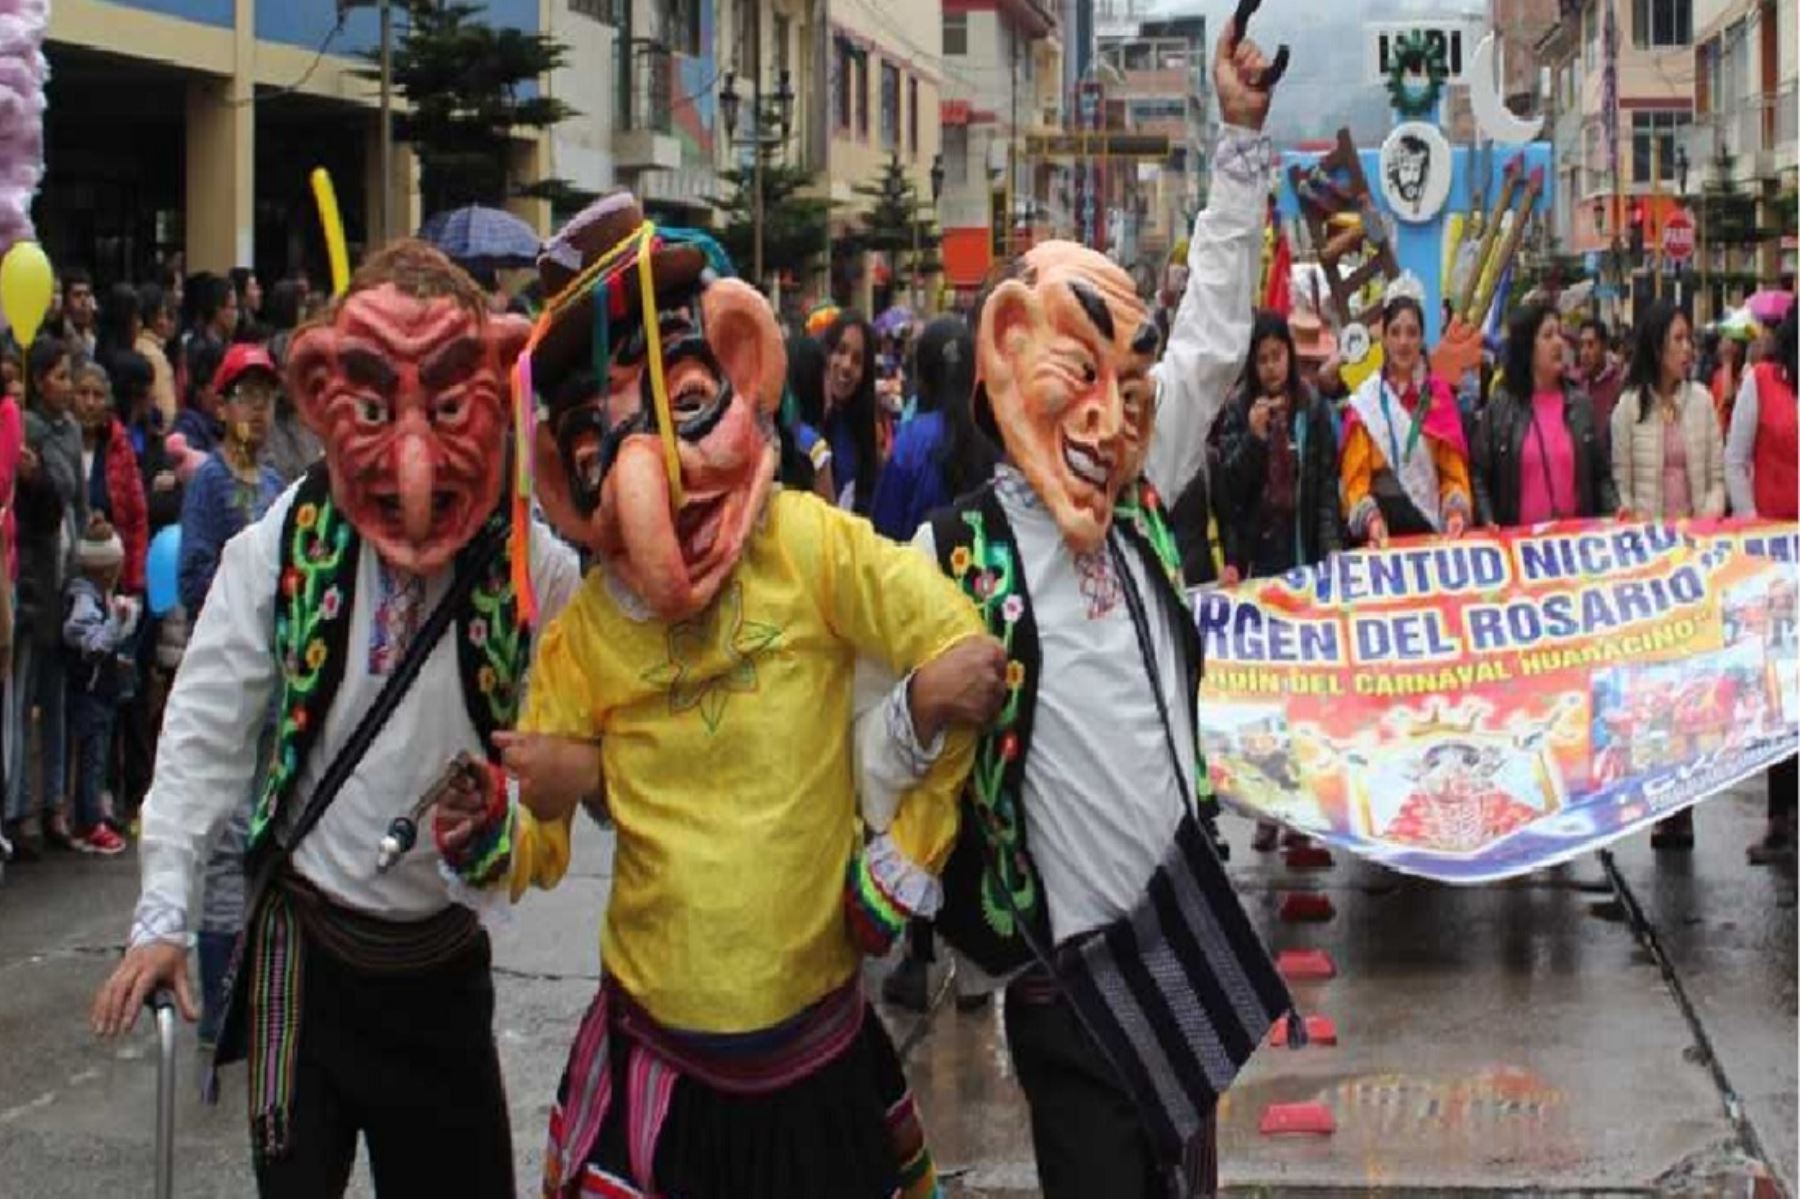 La capital de la región Áncash se apresta a celebrar, en un ambiente de desbordante frenesí y colorido, su icónico Carnaval Huaracino, una de las más multitudinarias celebraciones de su calendario festivo.